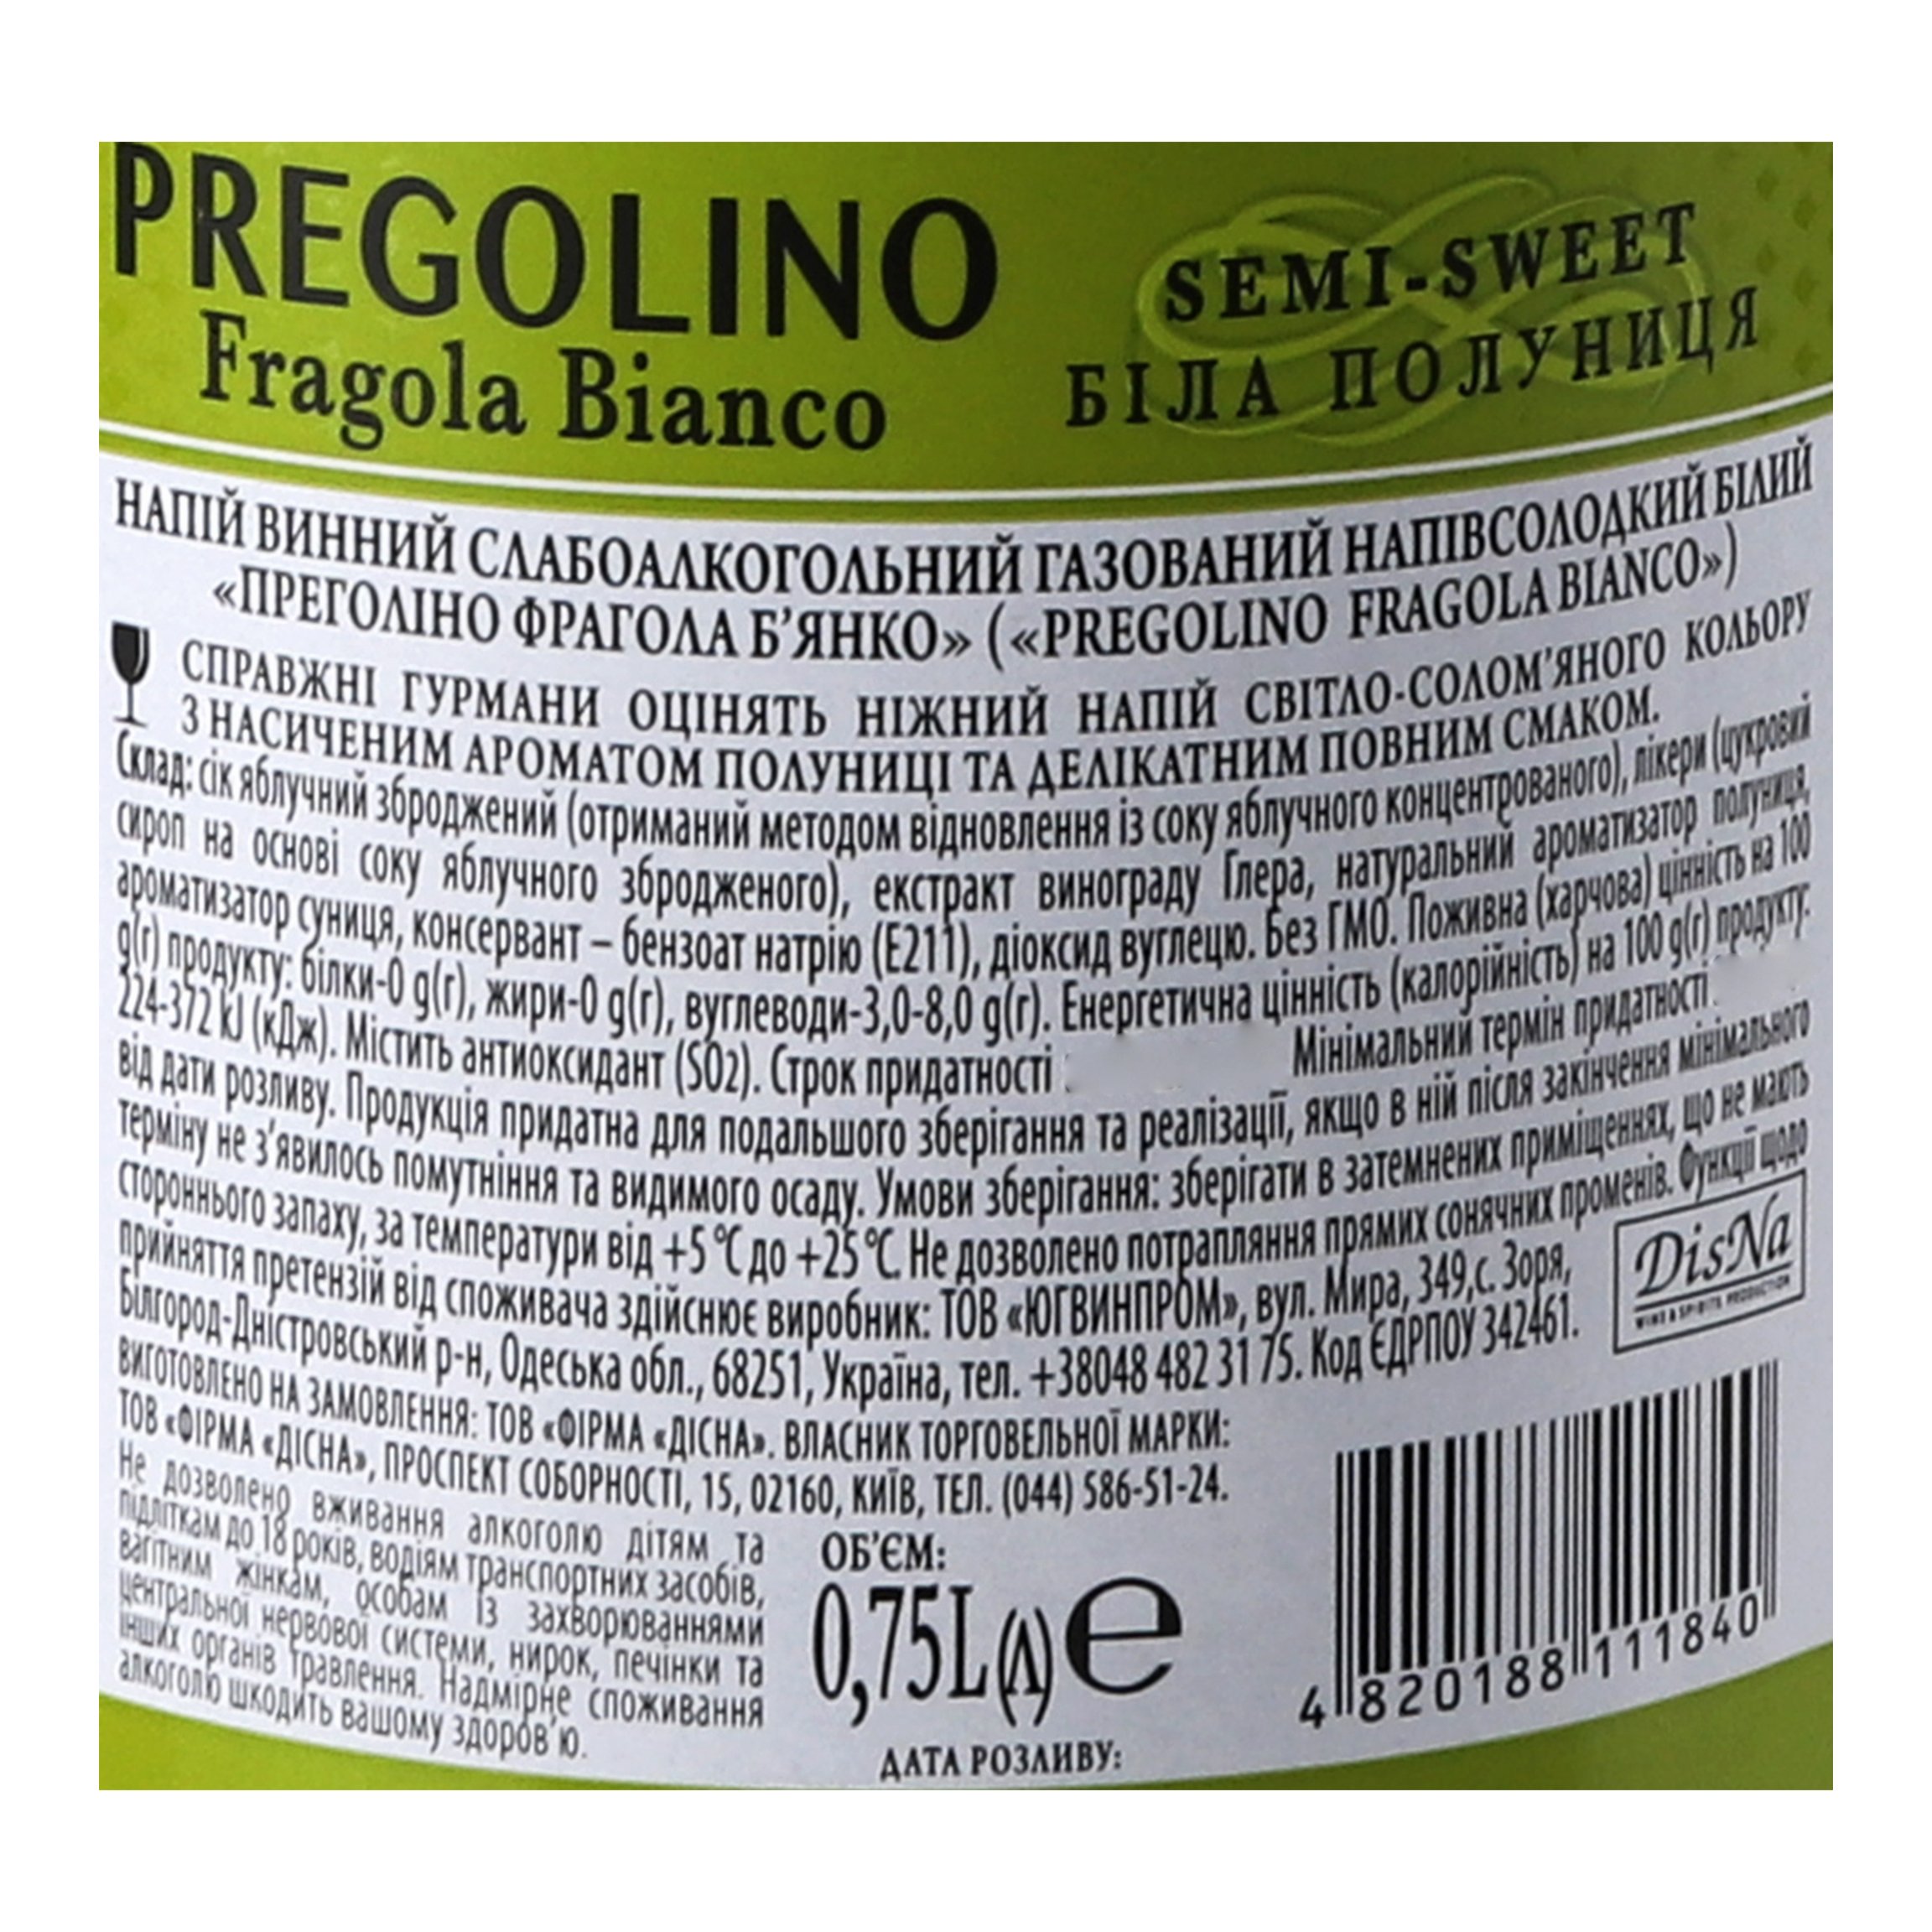 Напій винний слабоалкогольний газований Pregolino Fragola Bianco, напівсолодкий, 8,5%, 0,75 л (478708) - фото 5